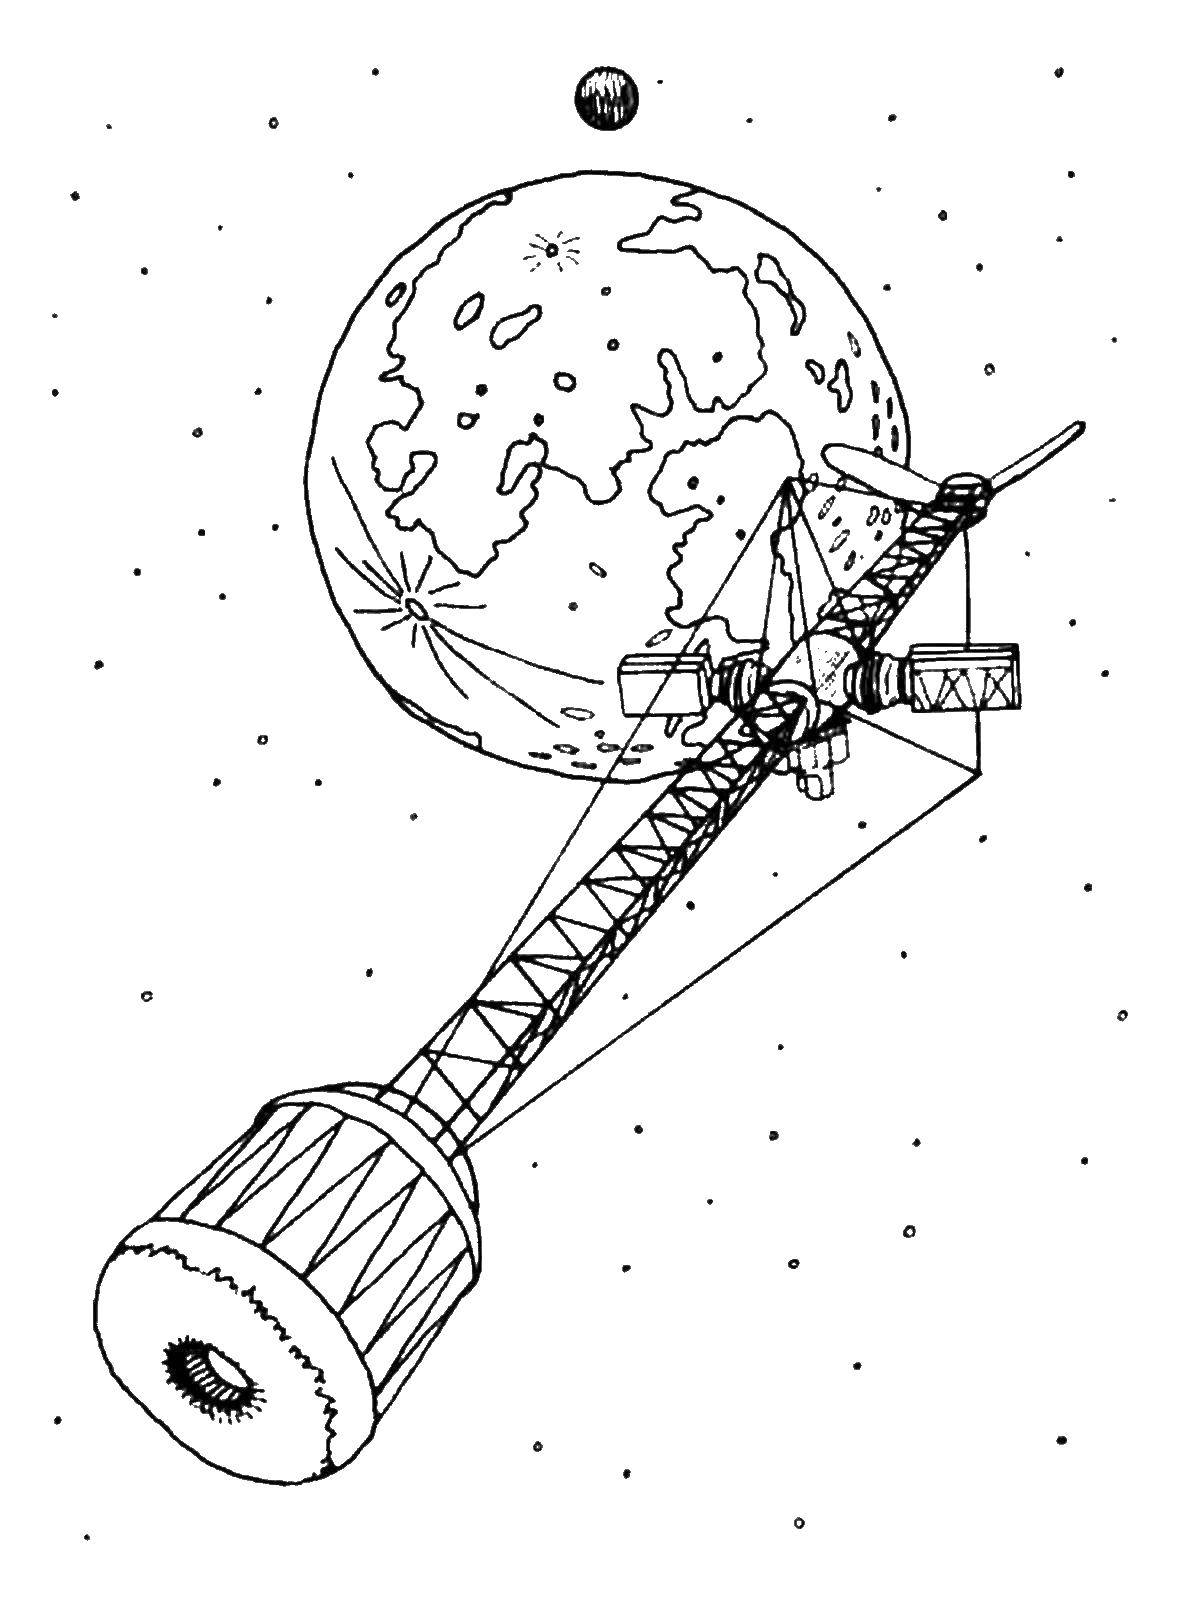 Опис: розмальовки  Супутник у космосі. Категорія: космос. Теги:  Супутник , космос.